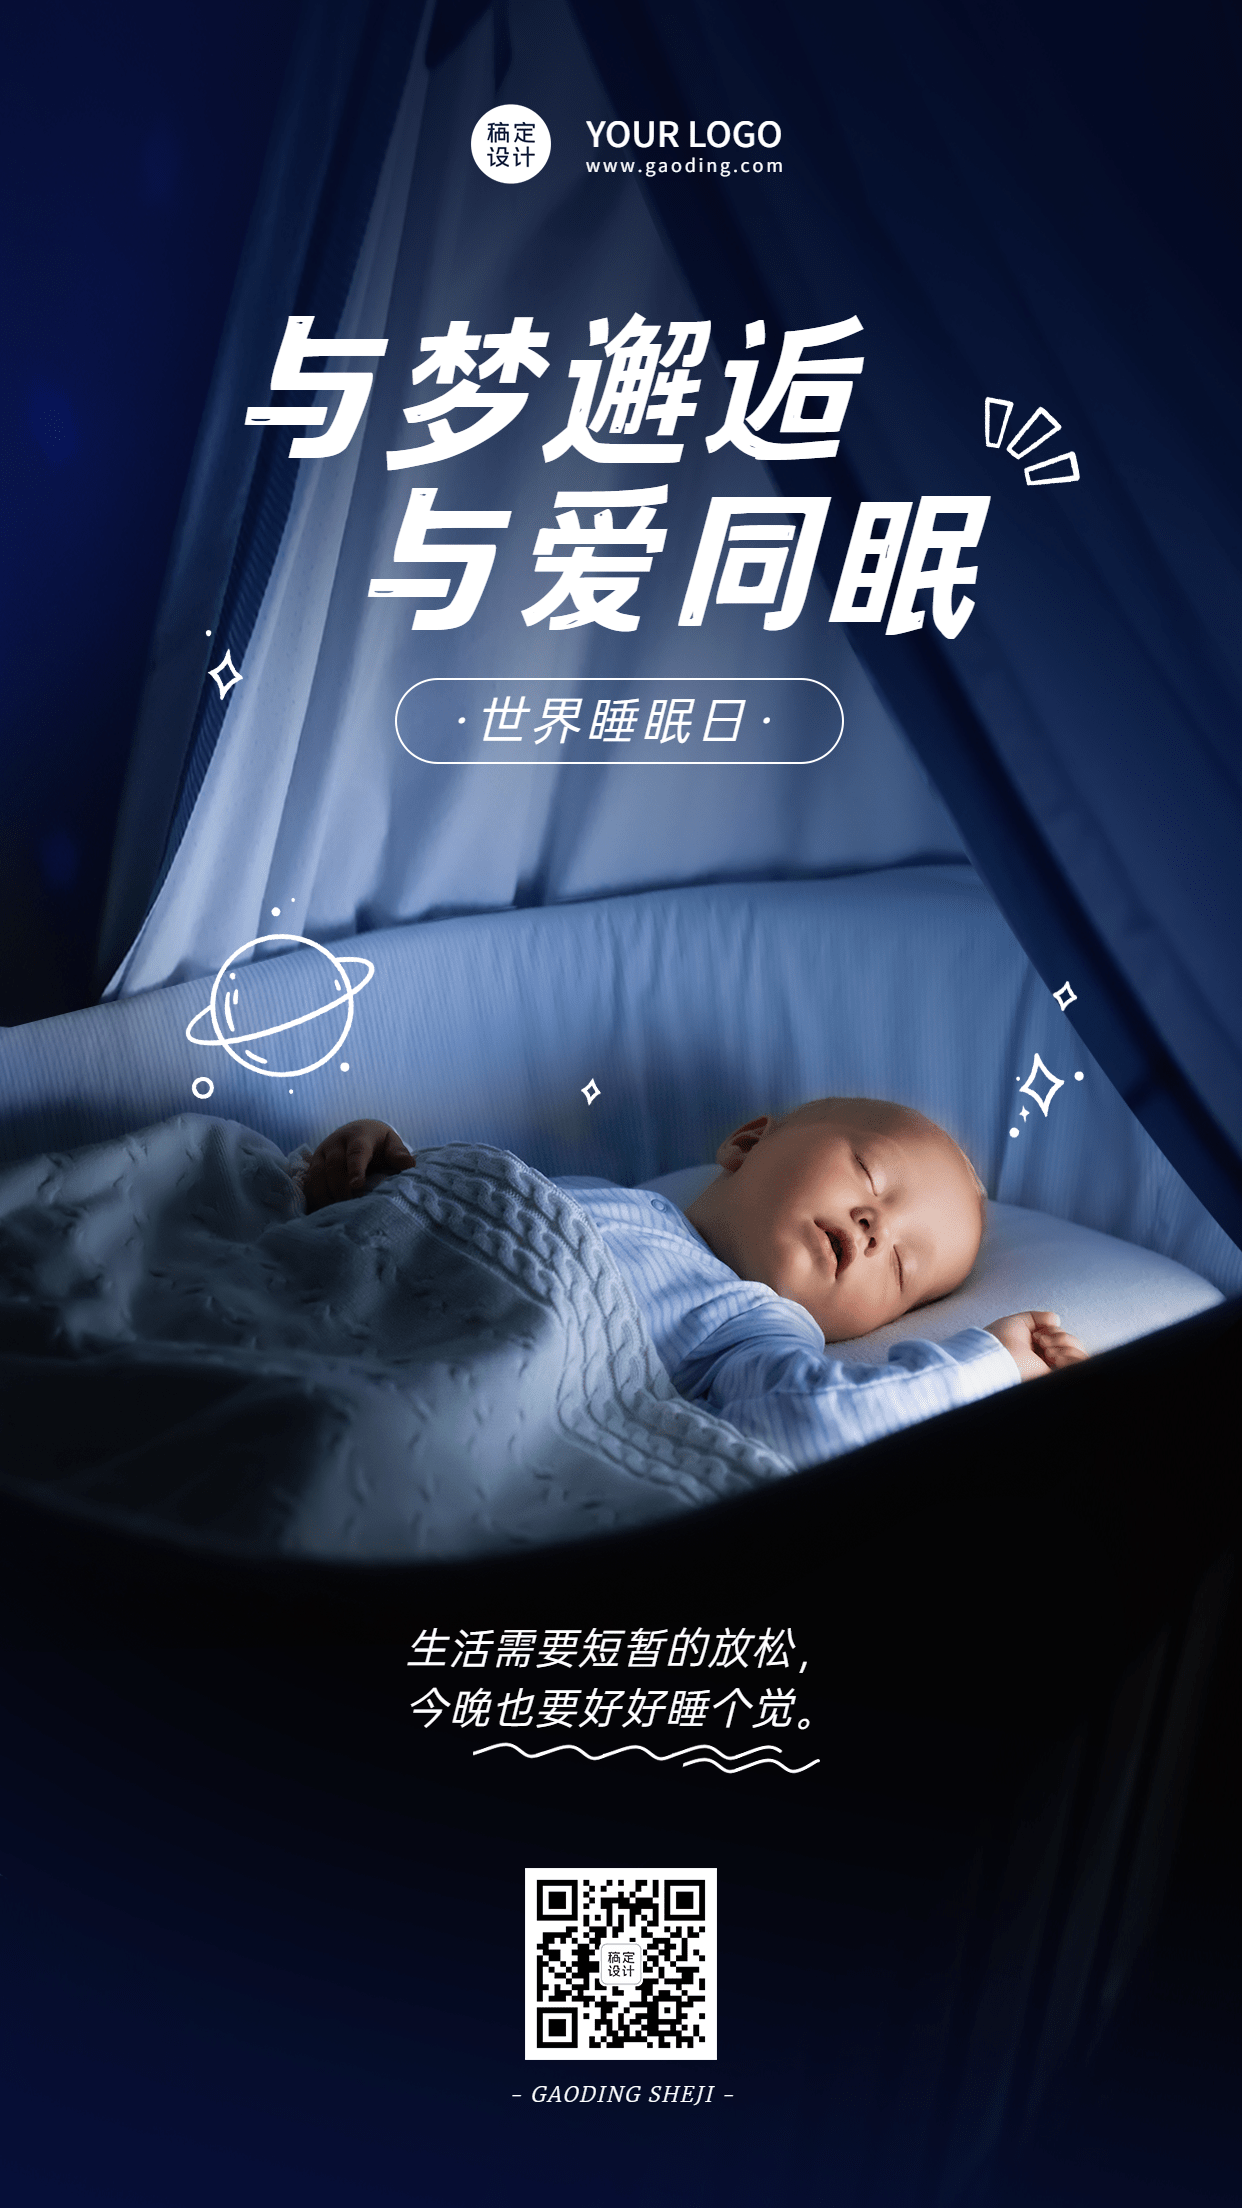 3.21世界睡眠日节日宣传排版手机海报预览效果